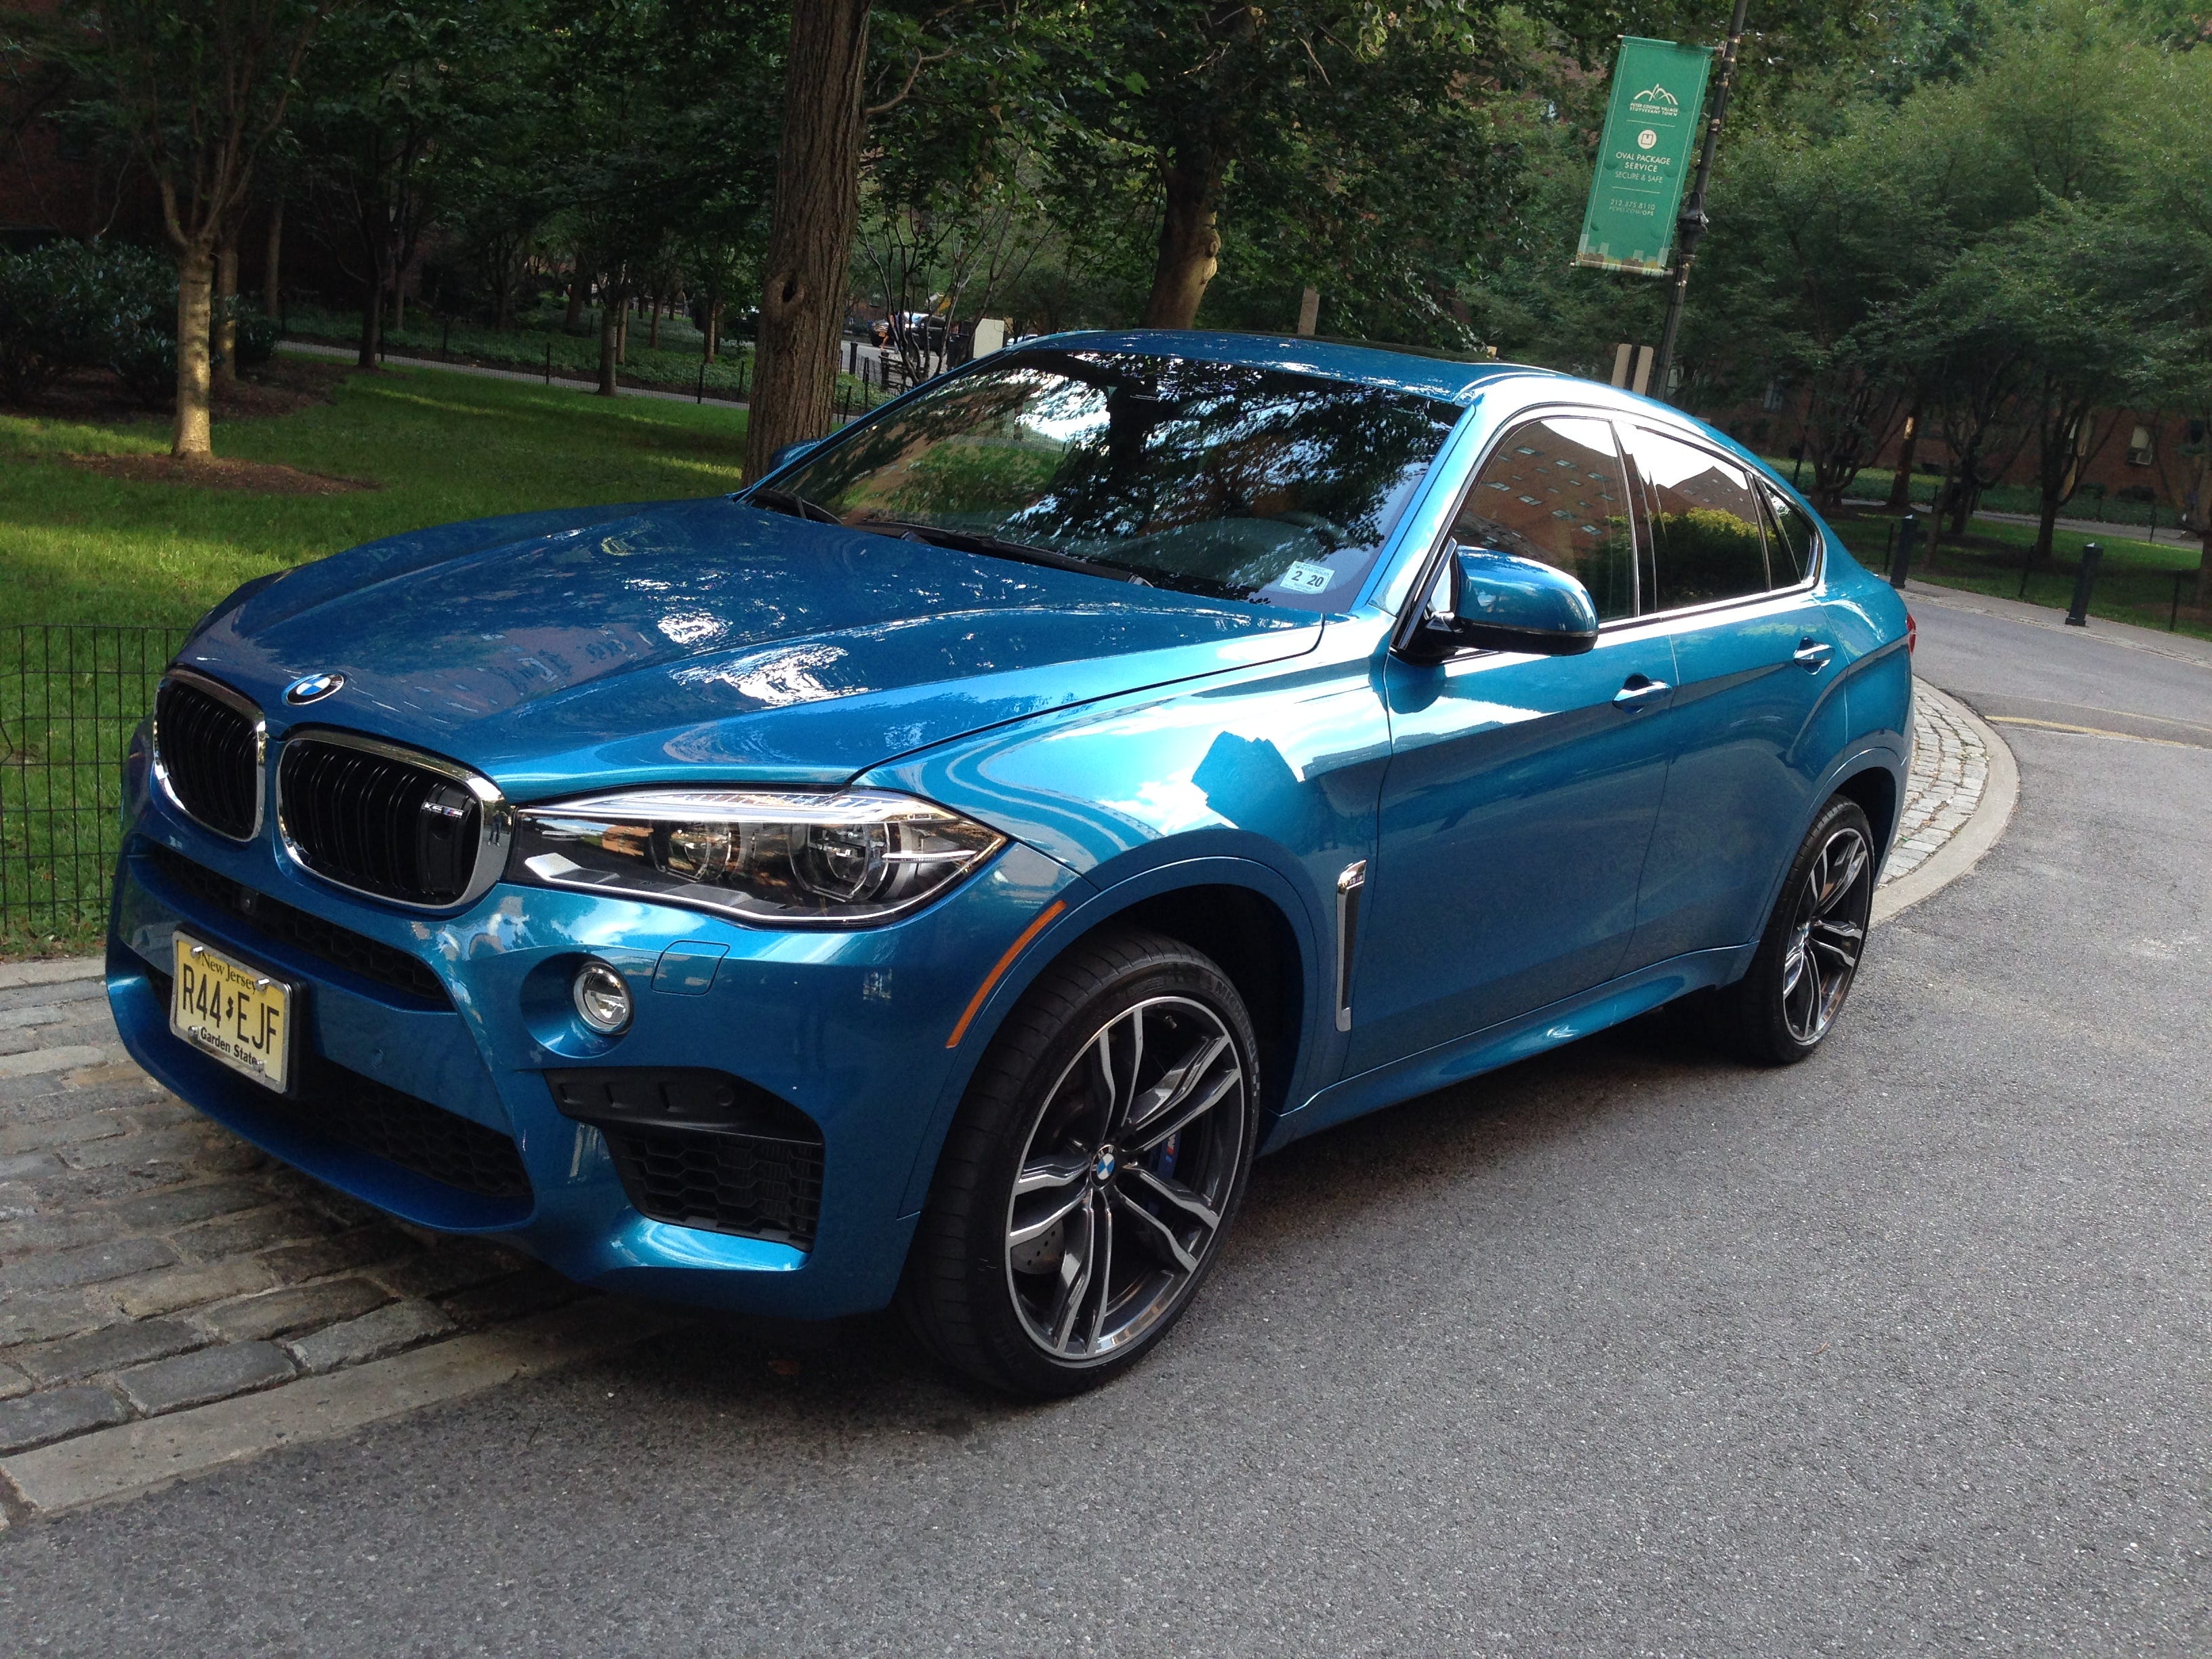 BMW X6 (G06) mod photo